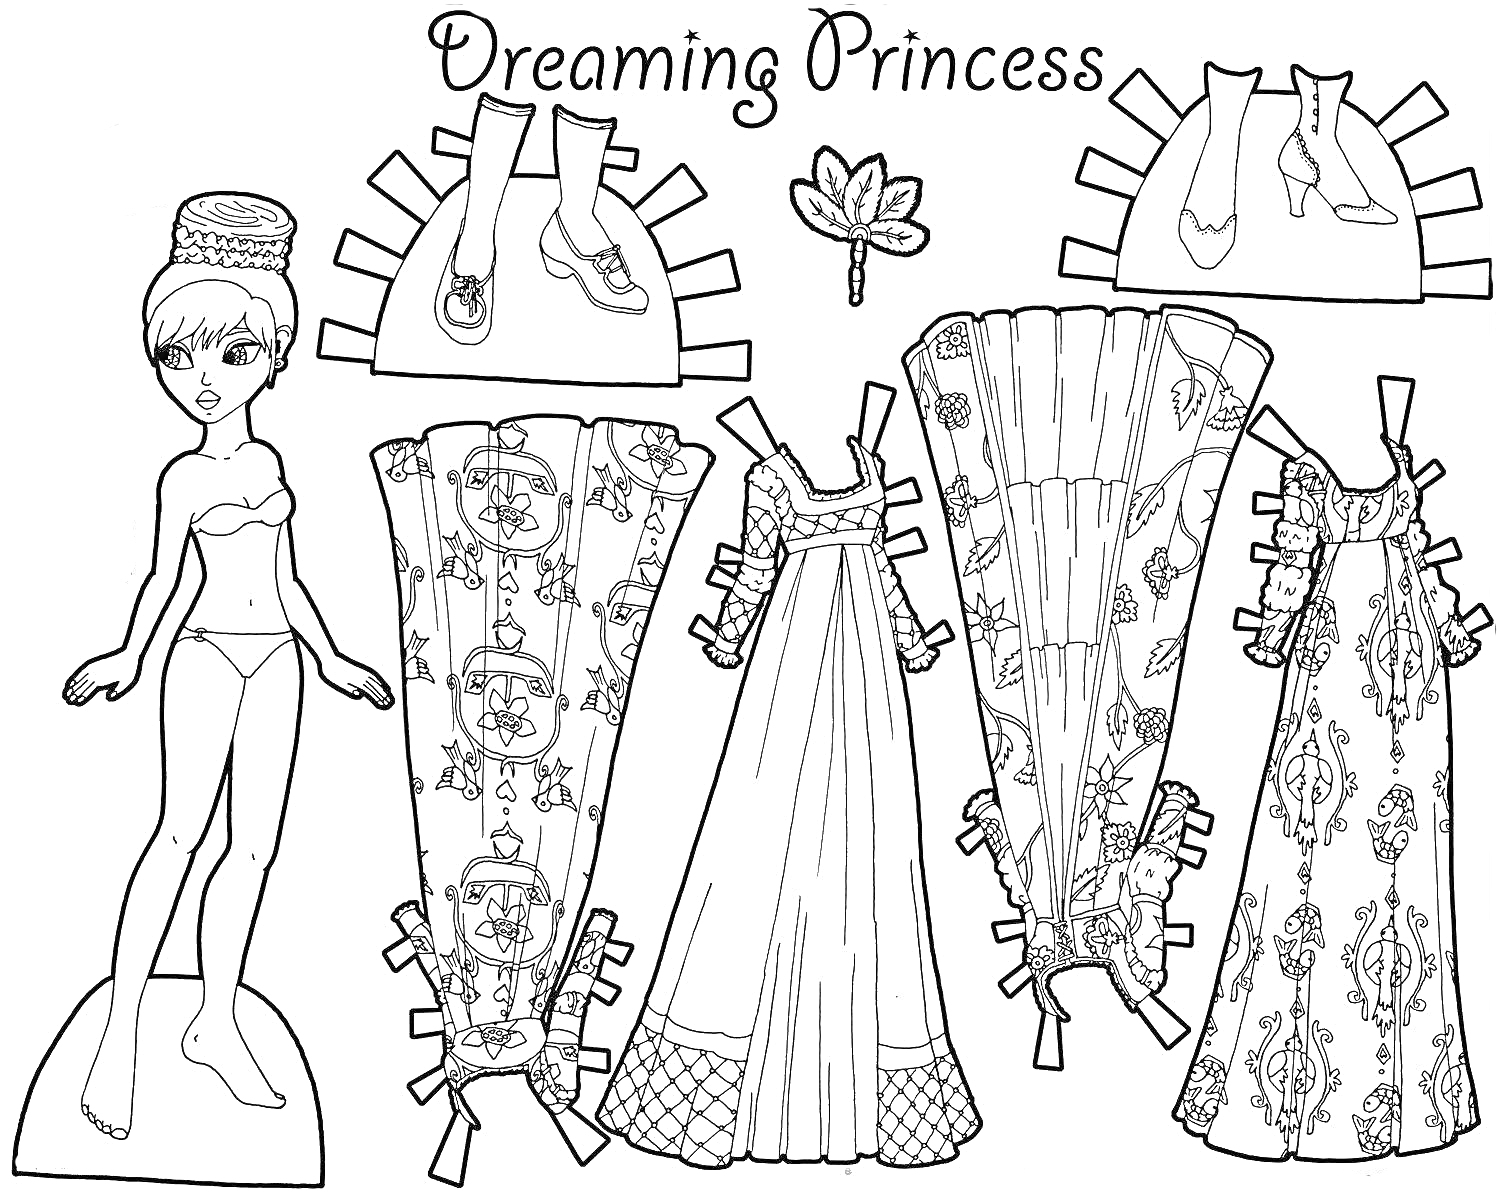 Бумажная кукла принцесса с нарядами и обувью